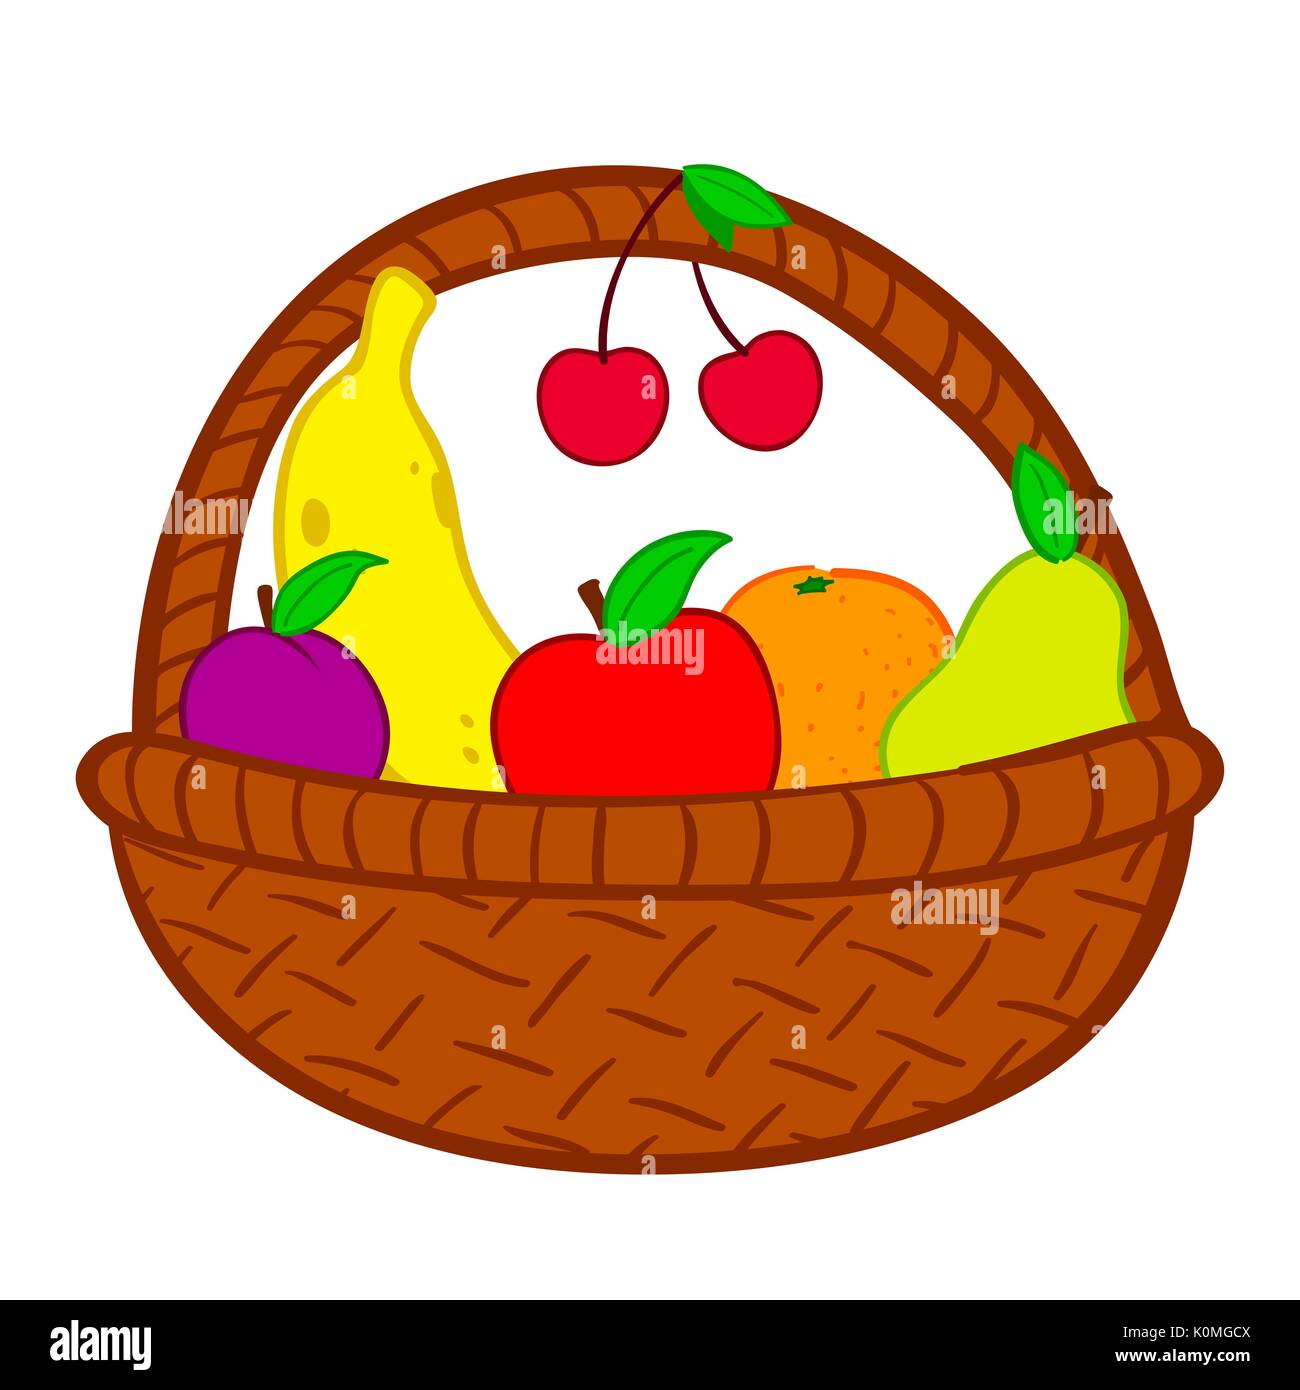 Fruits in basket doodle illustration Stock Vector